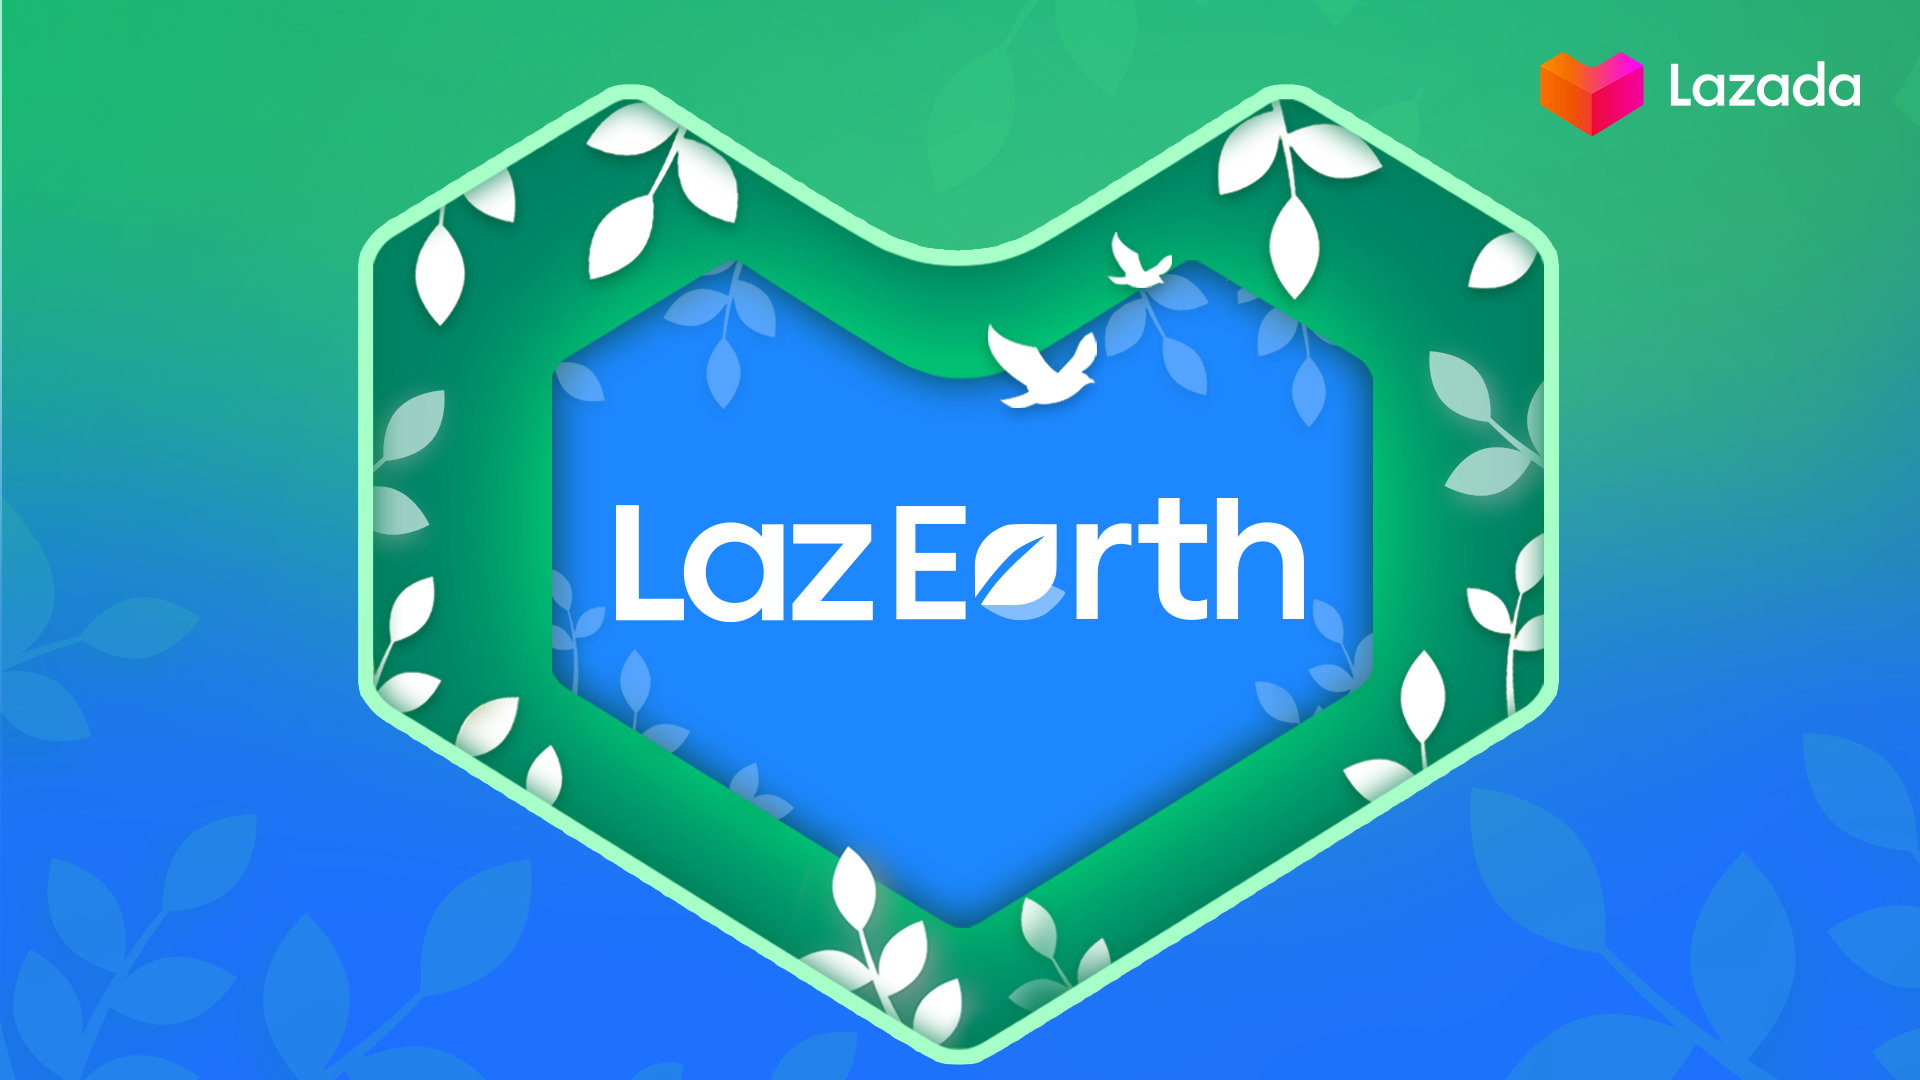 Lazada launches LazEarth campaign